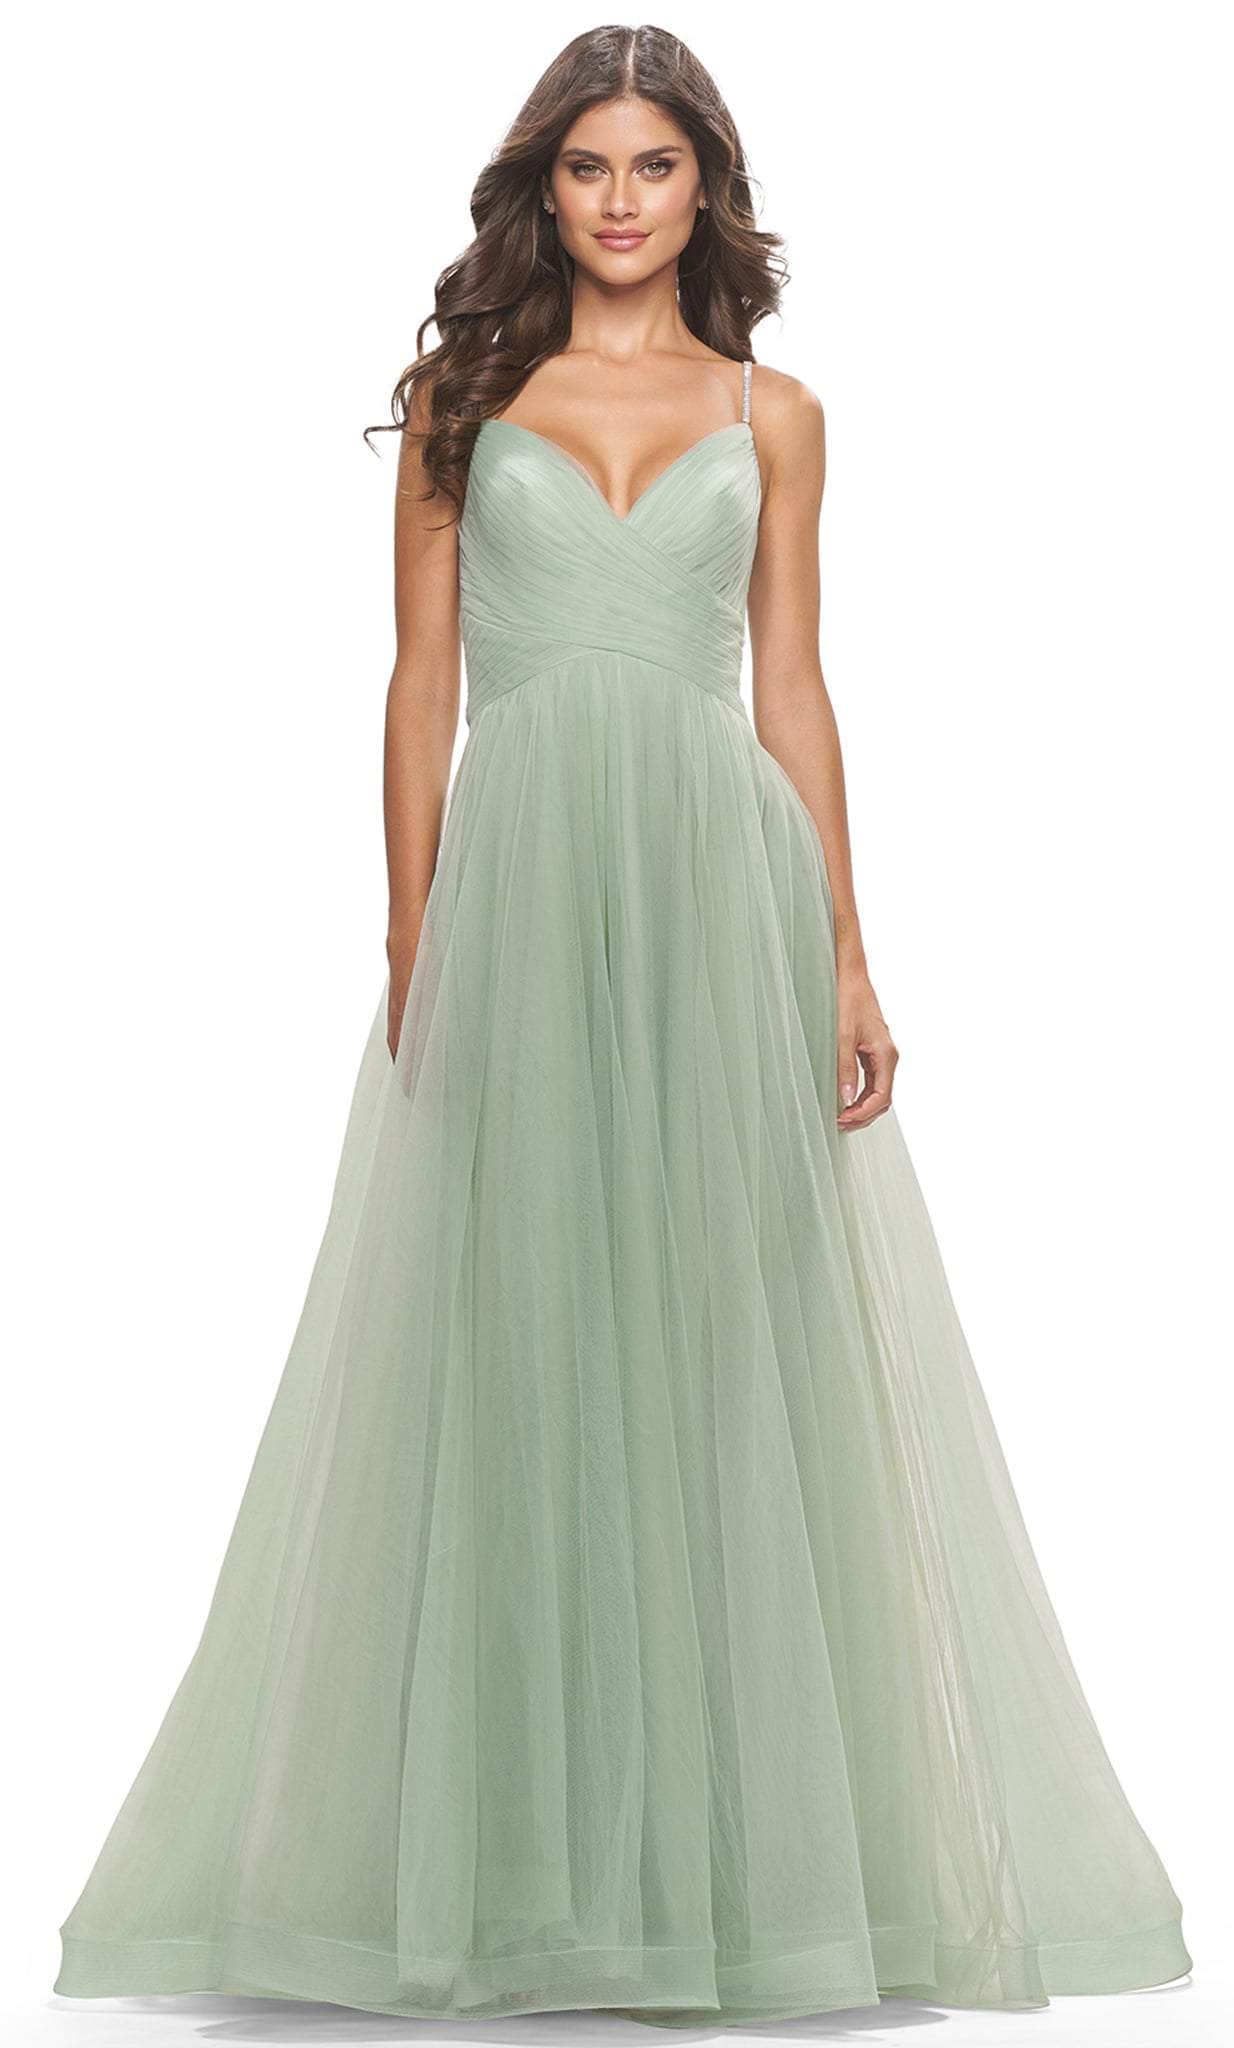 Image of La Femme 31204 - Sweetheart Embellished Strap Evening Dress